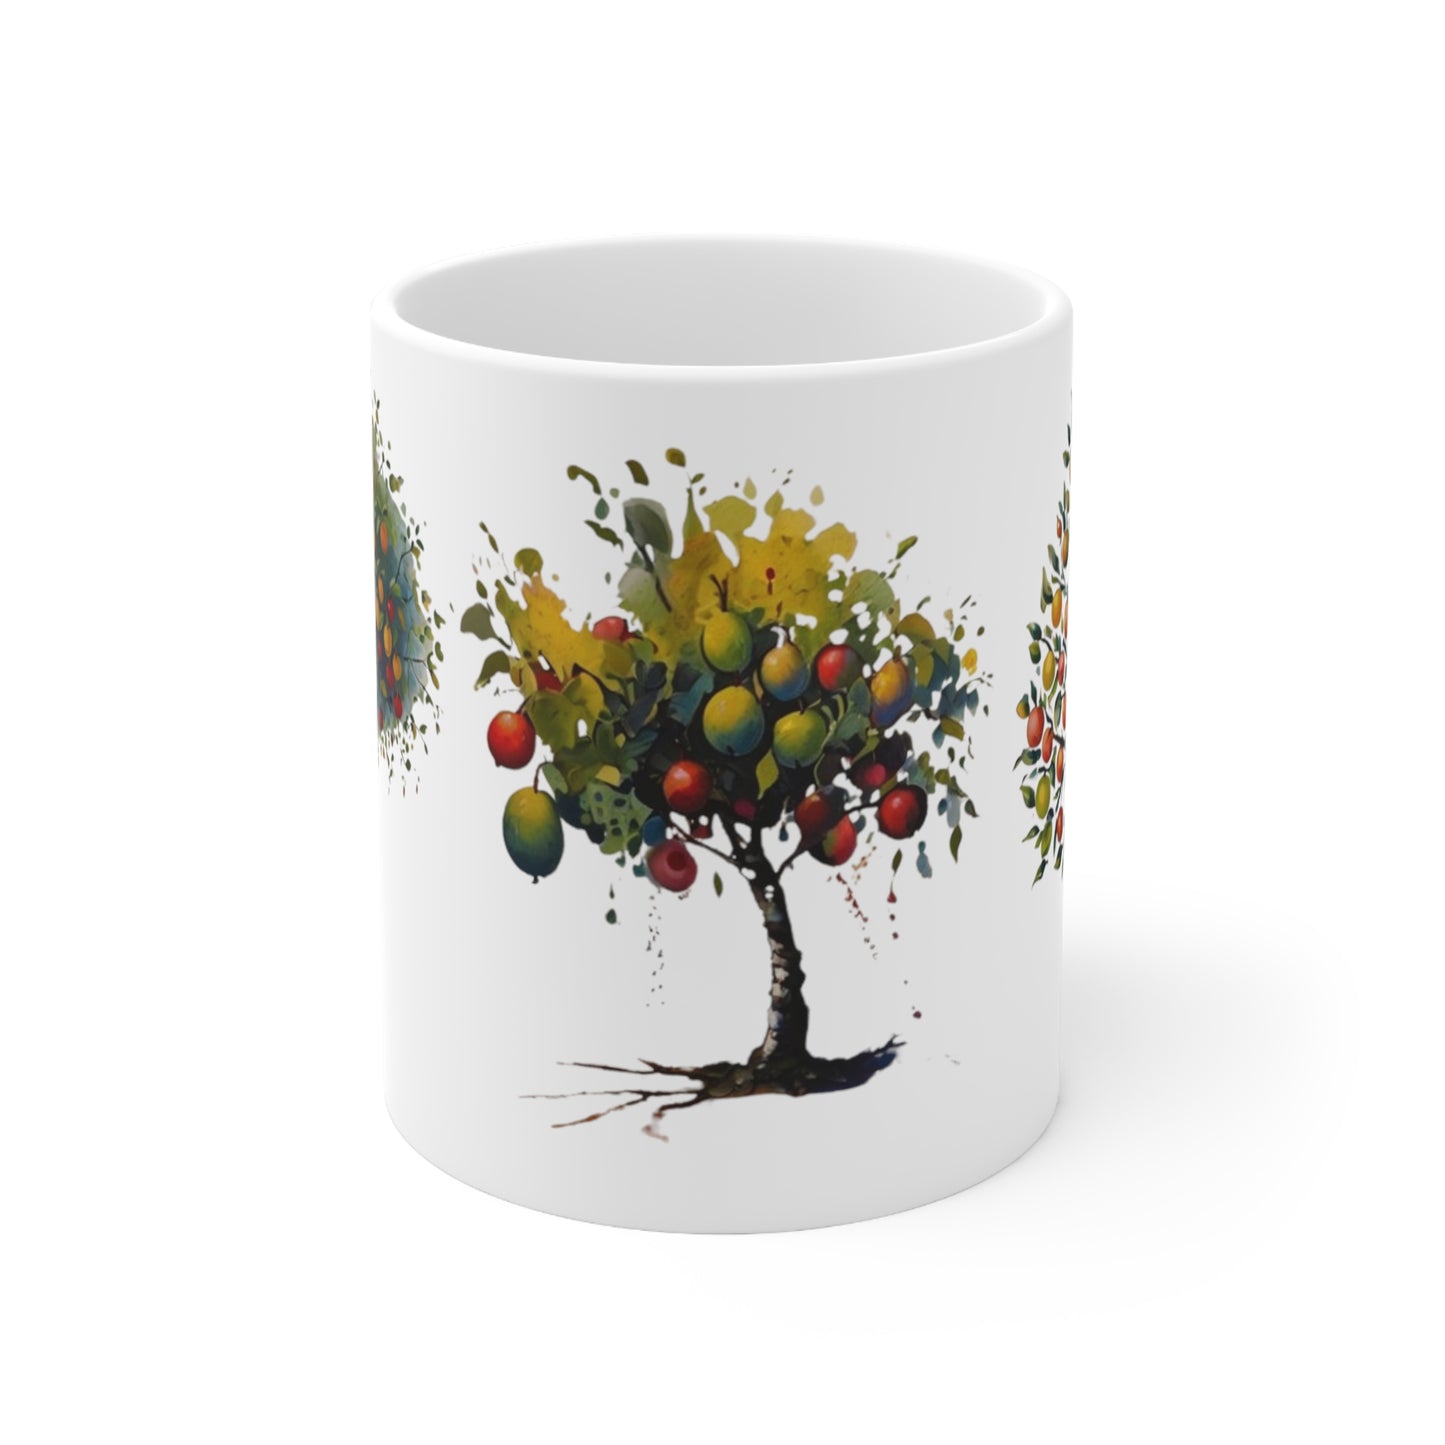 Pear Trees Art Mug - Ceramic Coffee Mug 11oz